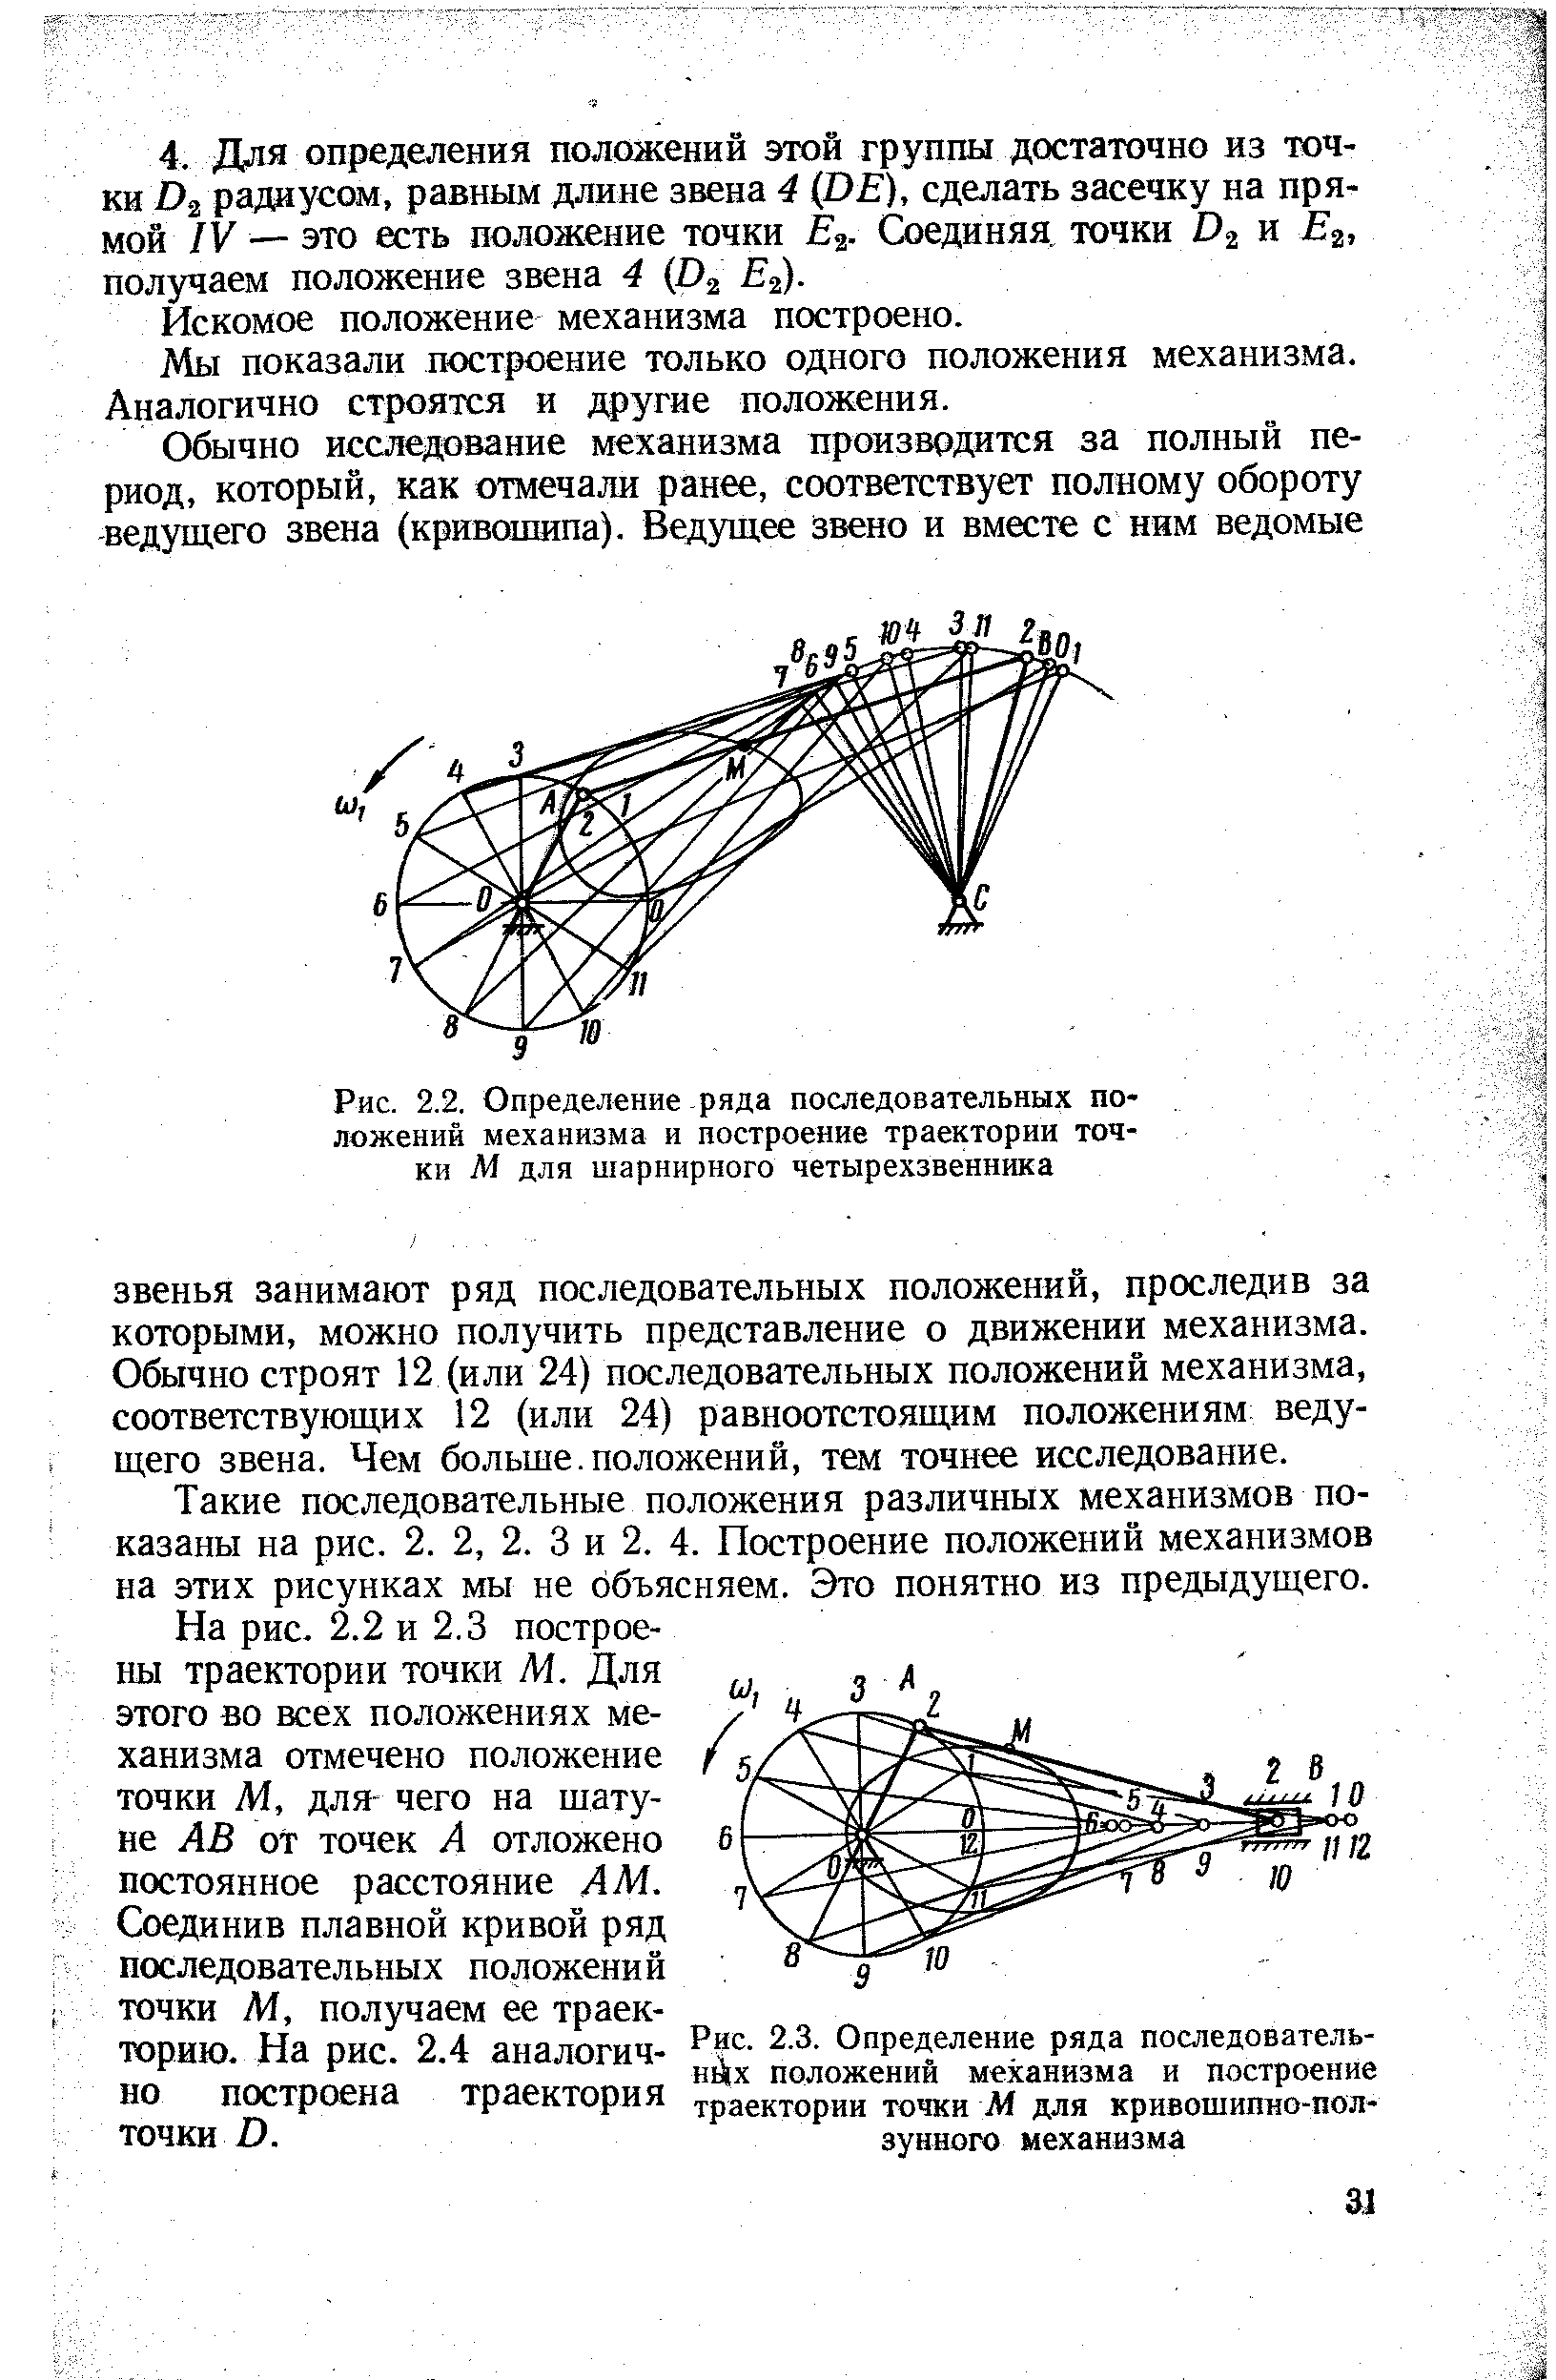 Рис. 2.2. Определение ряда последовательных положений механизма и построение траектории точки М для шарнирного четырехзвенника
